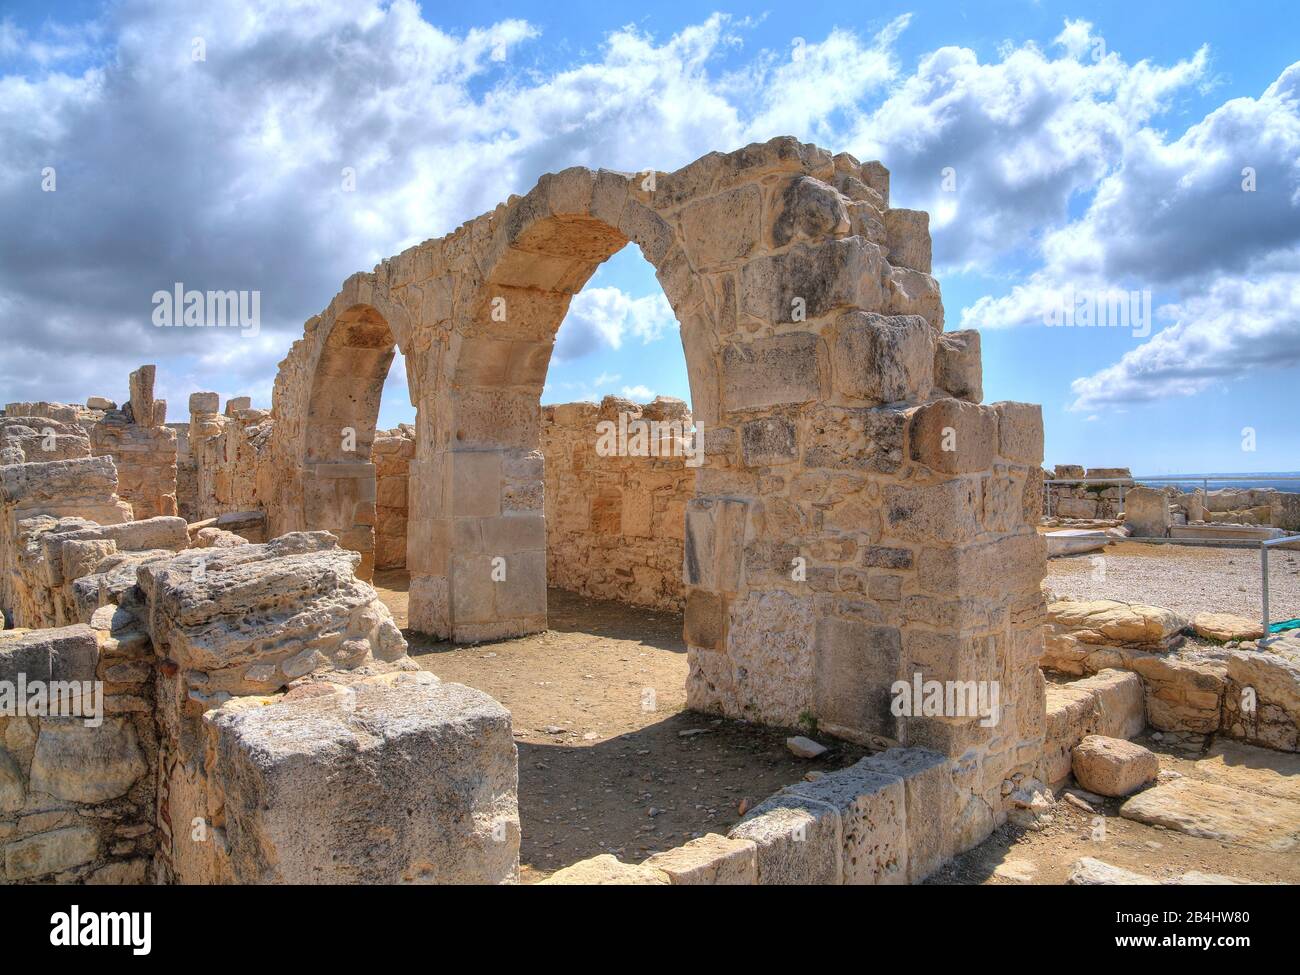 Basilica paleocristiana nell'antico sito archeologico di Kourion a Limassol, costa mediterranea, Cipro Foto Stock